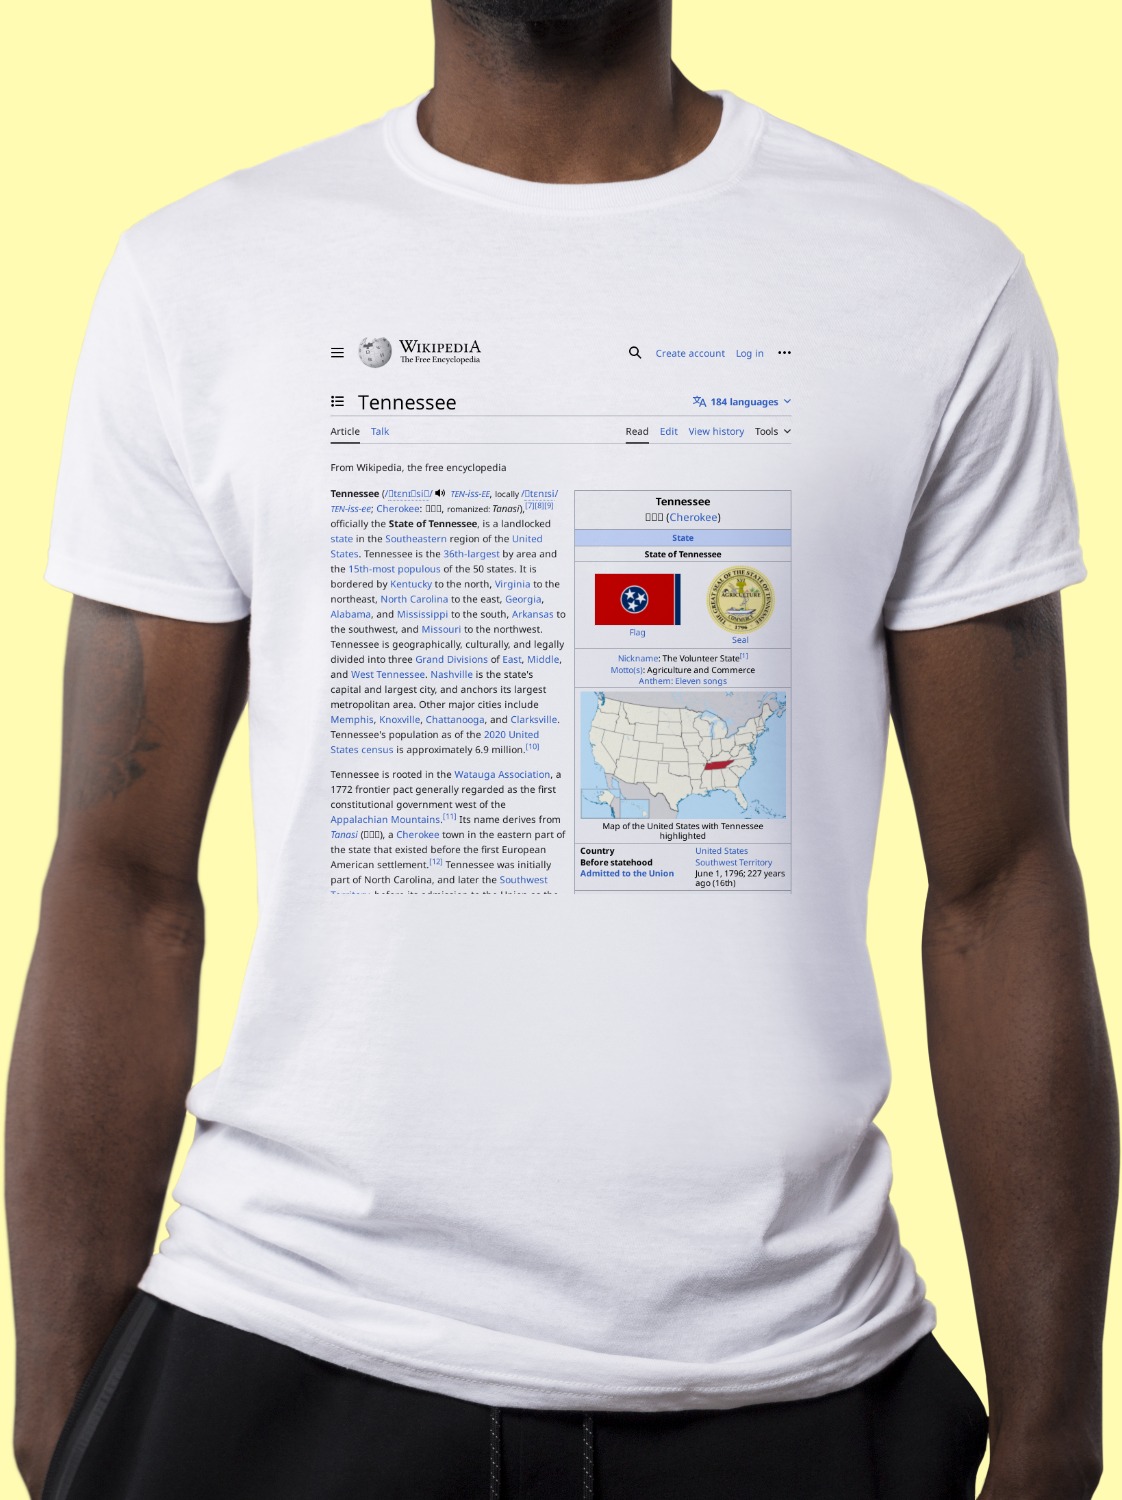 Tennessee Wikipedia Shirt